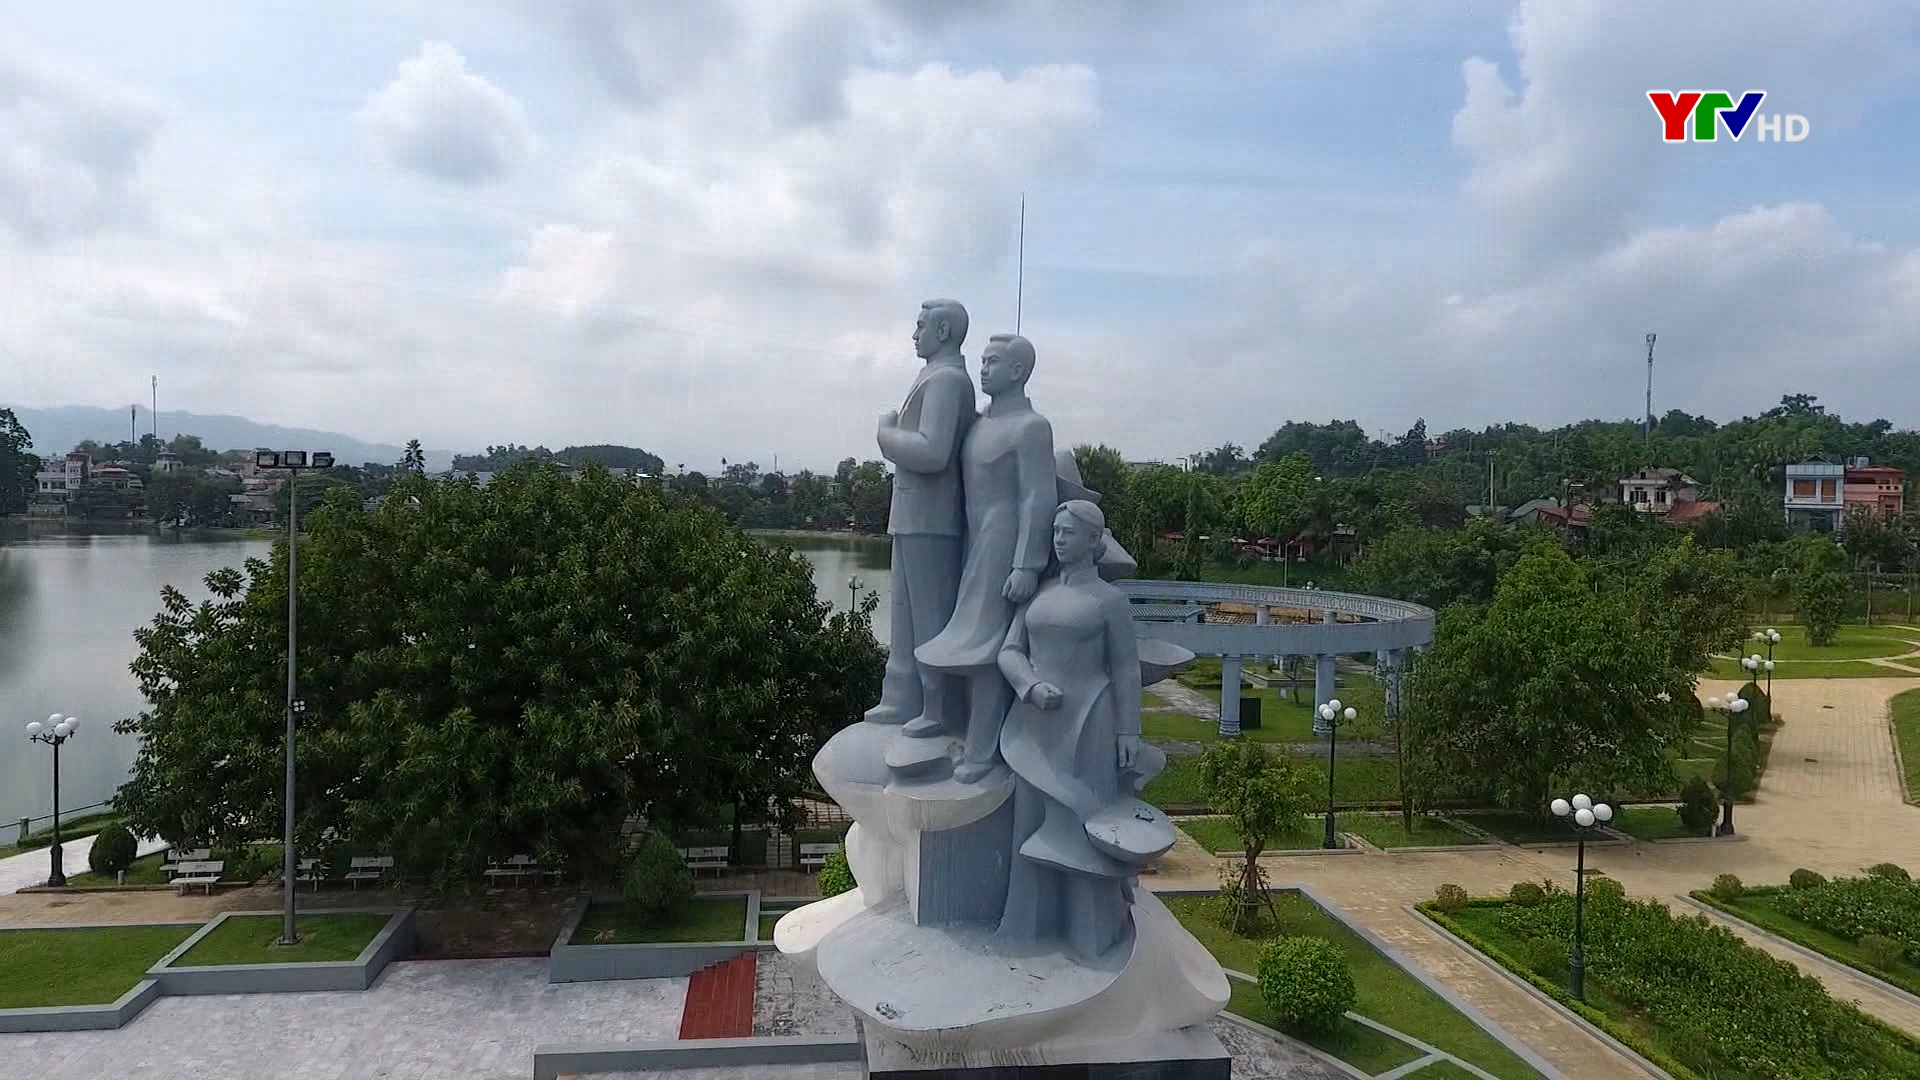 Khu lăng mộ Nguyễn Thái Học - Không gian văn hóa tâm linh giữa lòng thành phố